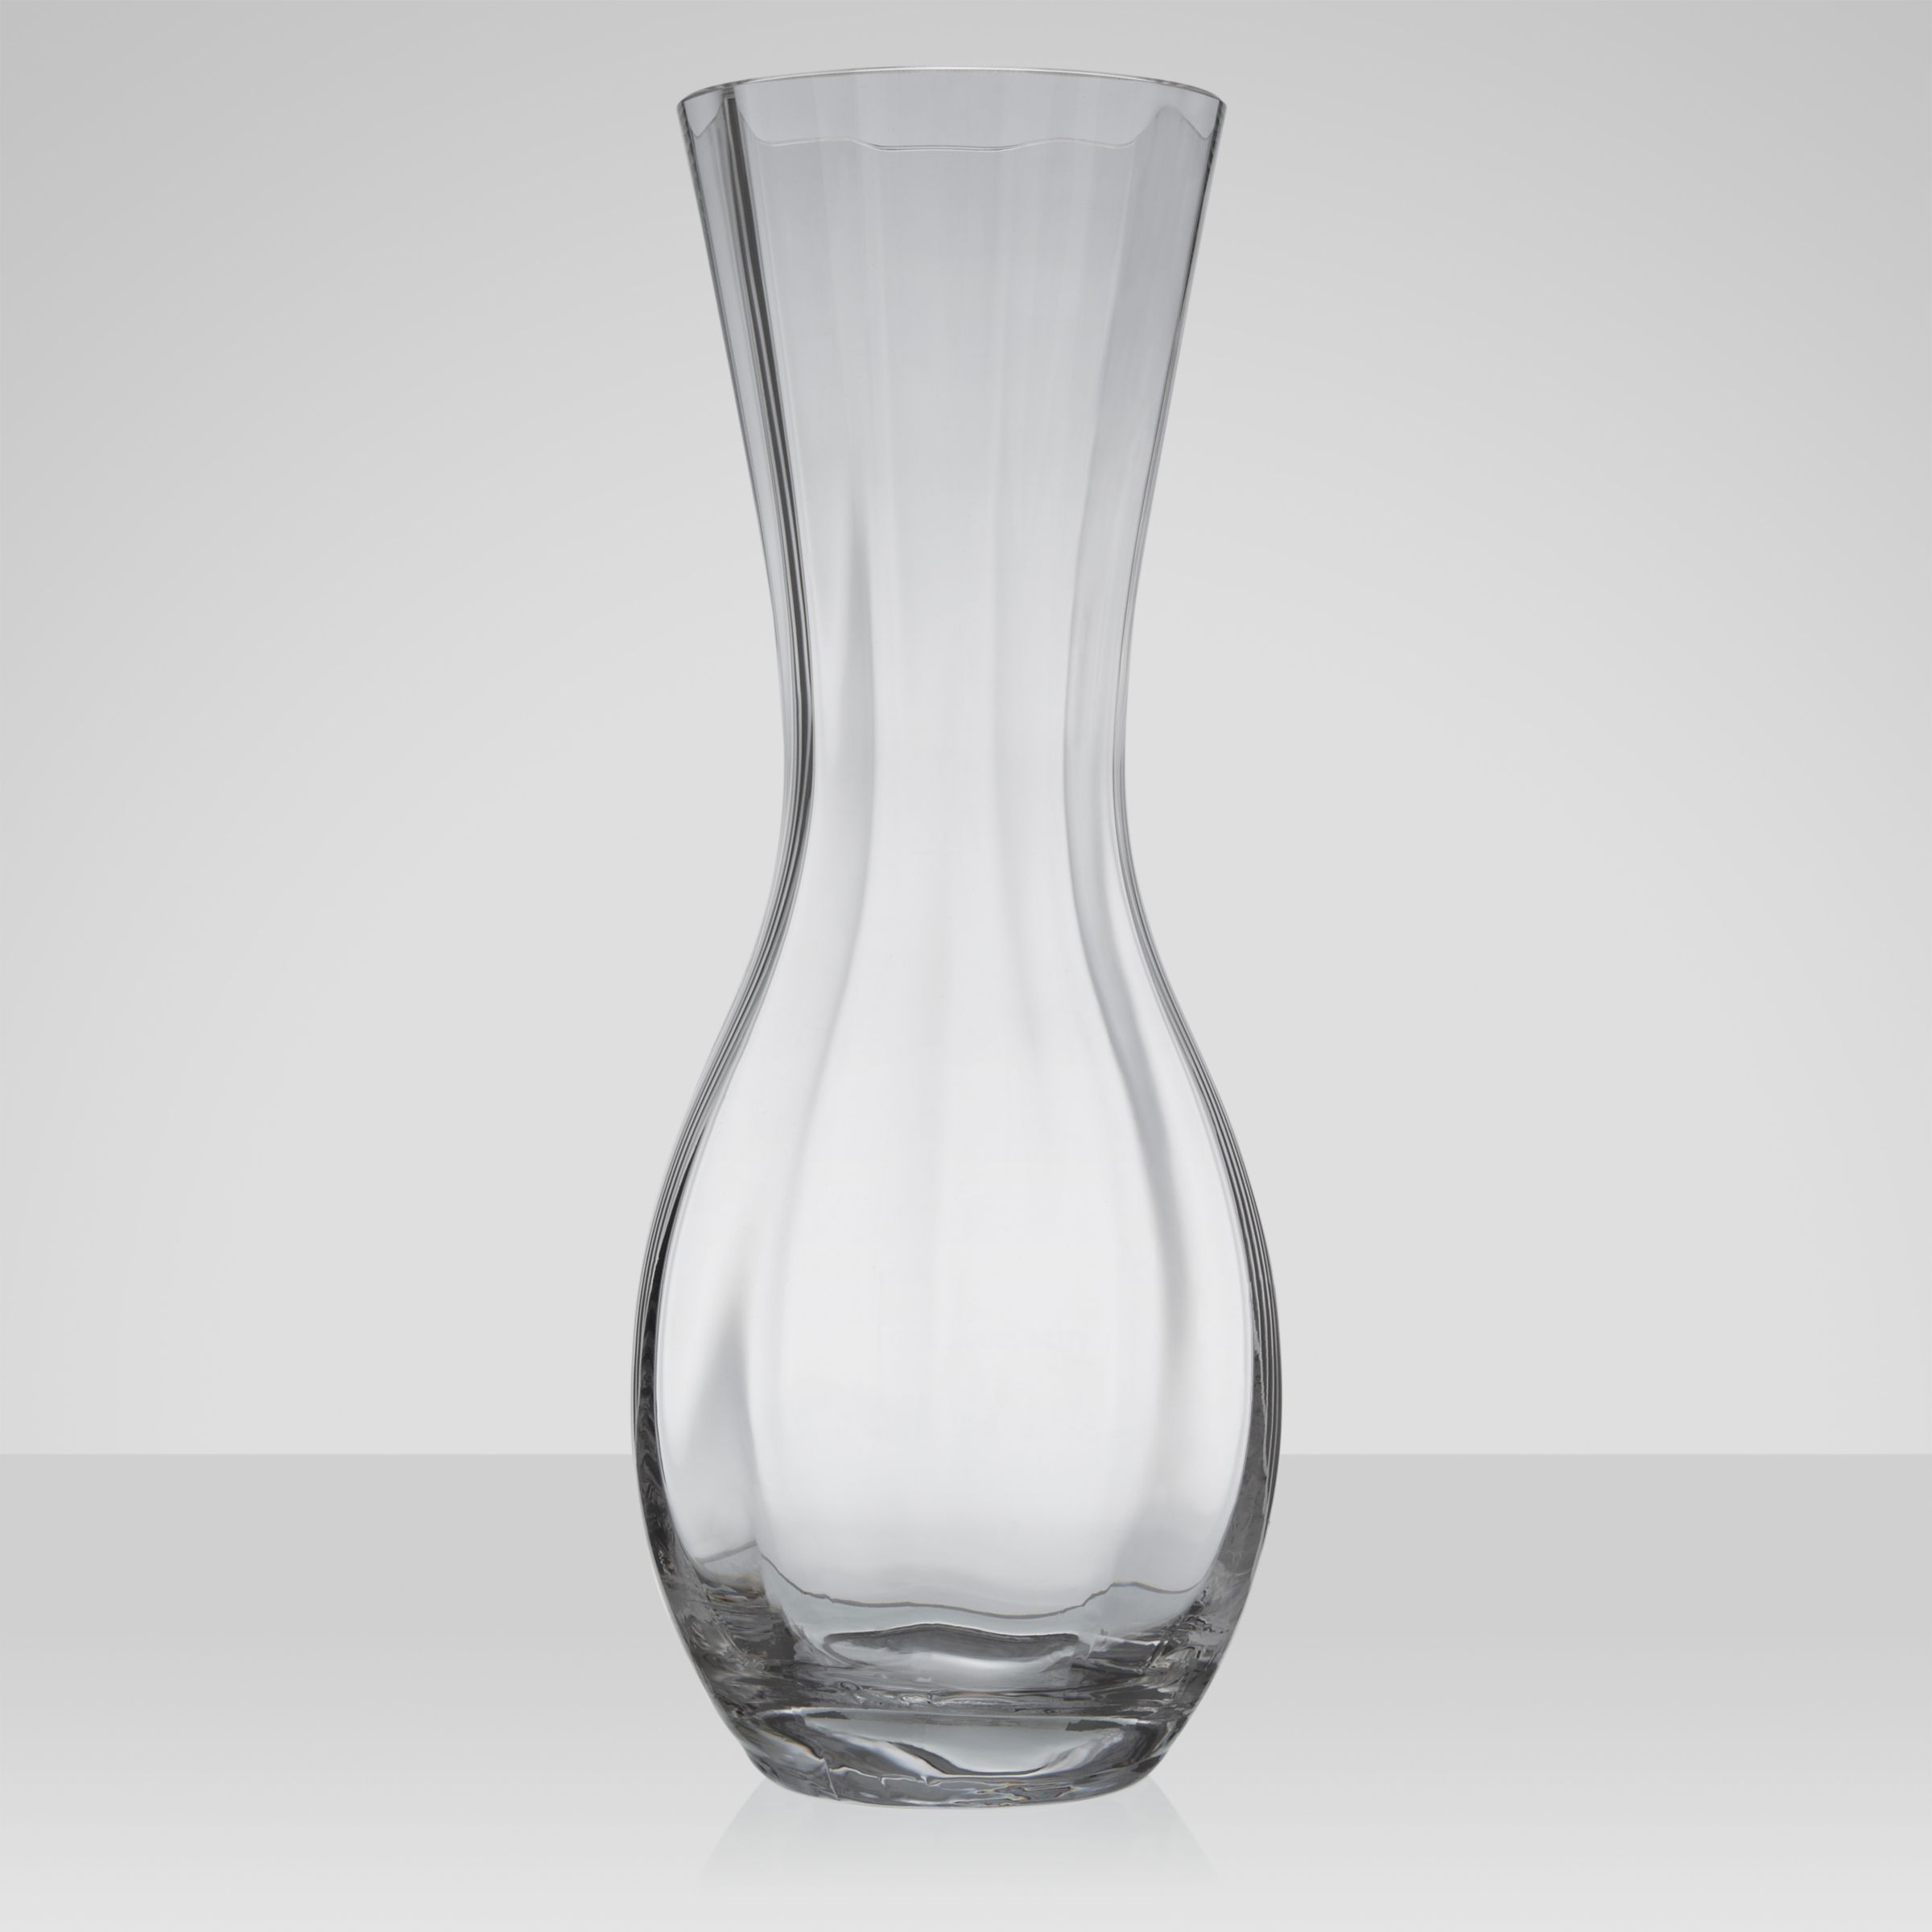 Dartington Crystal Dartington Florabundance Rose Vase 171821